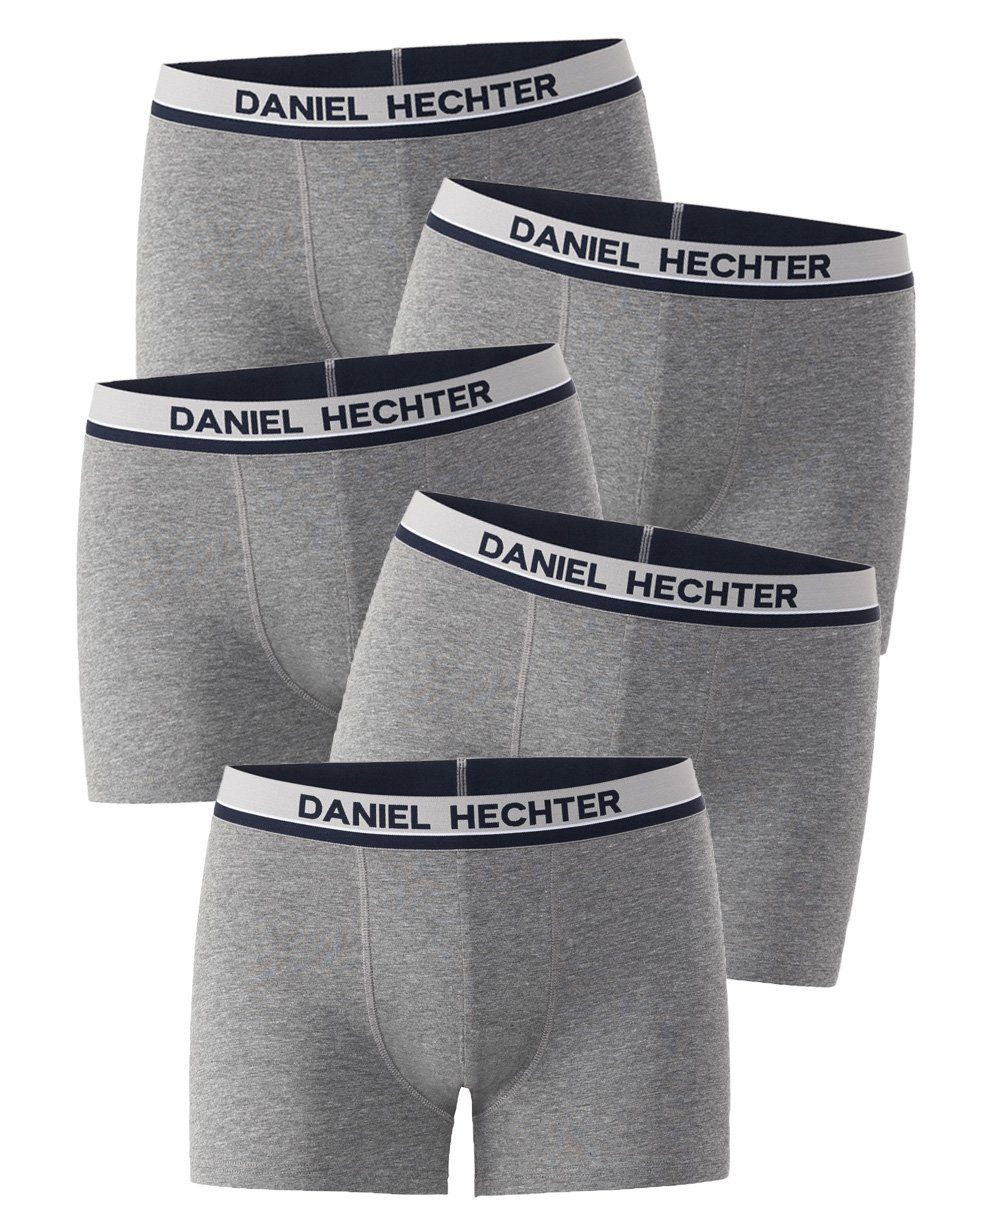 Daniel Hechter Boxershorts (Vorteilspack, 5-St., 5er-Pack) atmungsaktiv, hautfreundlich und optimale Passform durch elastischen Komfortbund grau